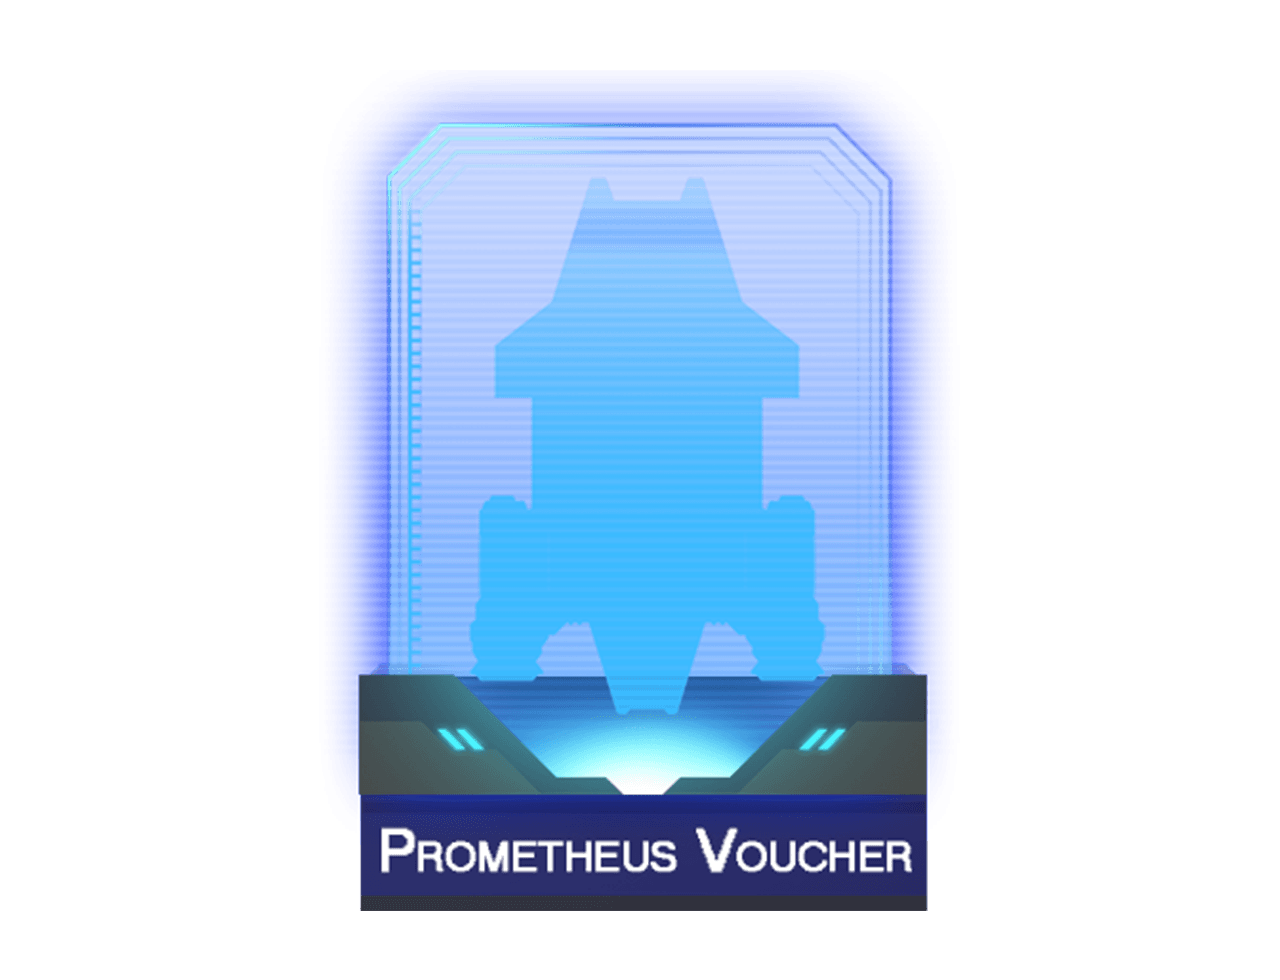 Prometheus Voucher